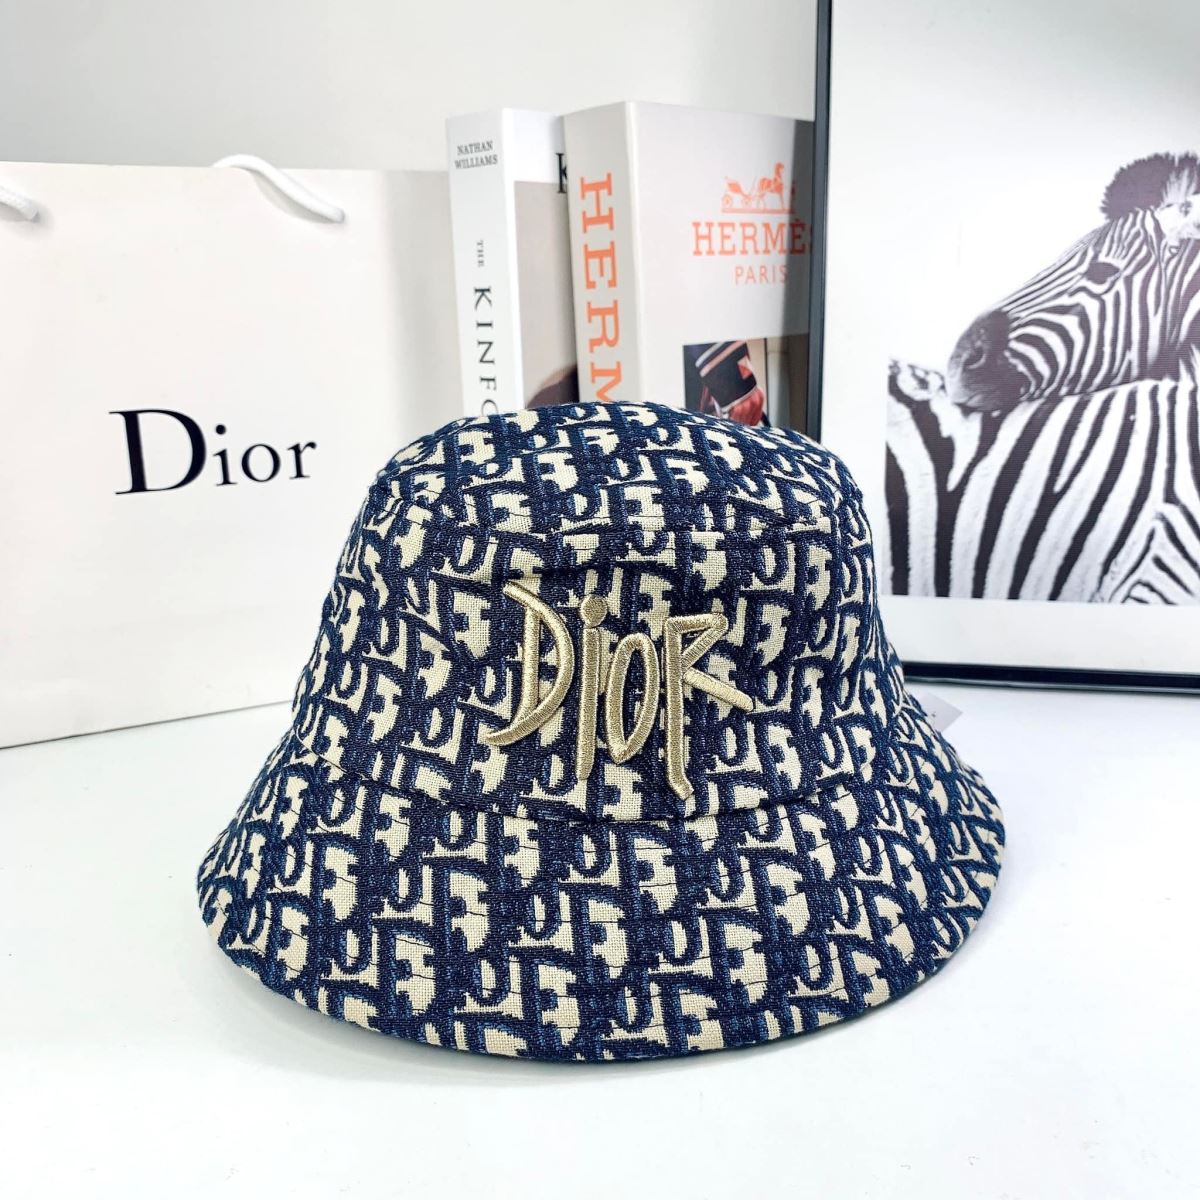 Thanh Hằng Jolie Nguyễn thời thượng với chiếc mũ bucket sang chảnh của Dior   Tạp chí Đẹp